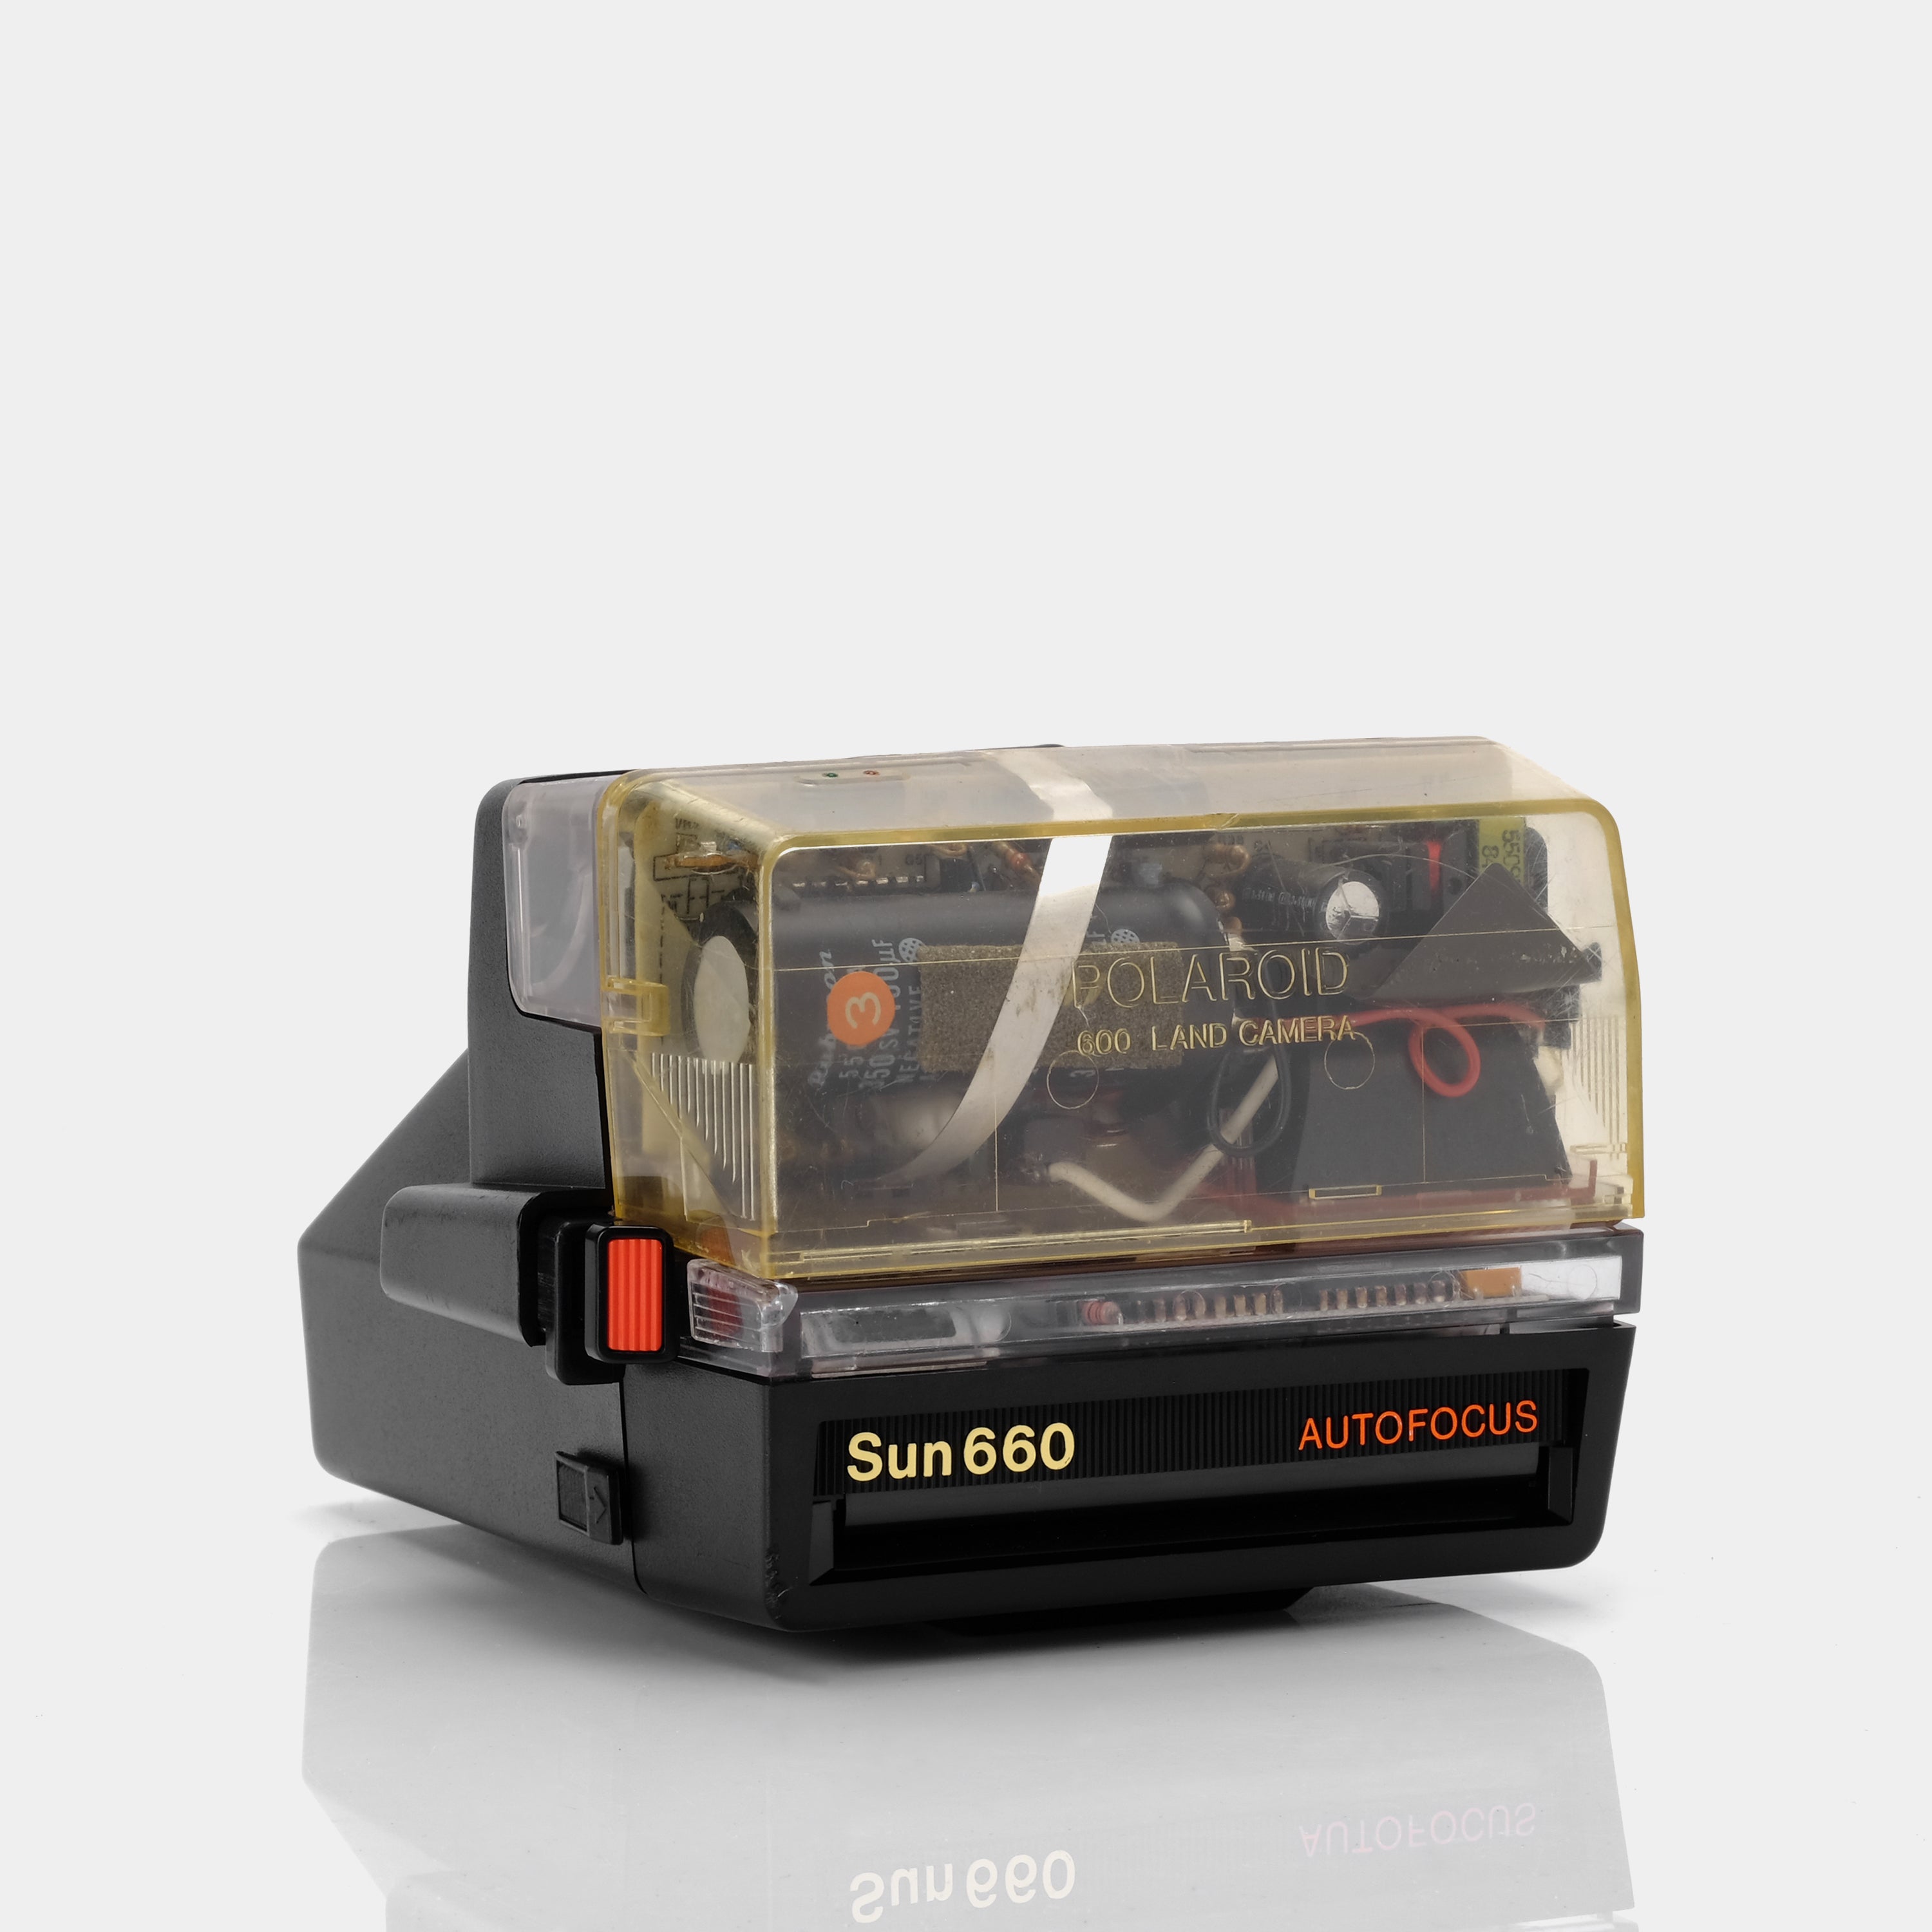 Polaroid 600 Rare Demo Sun660 Autofocus Clear & Black Instant Film Camera